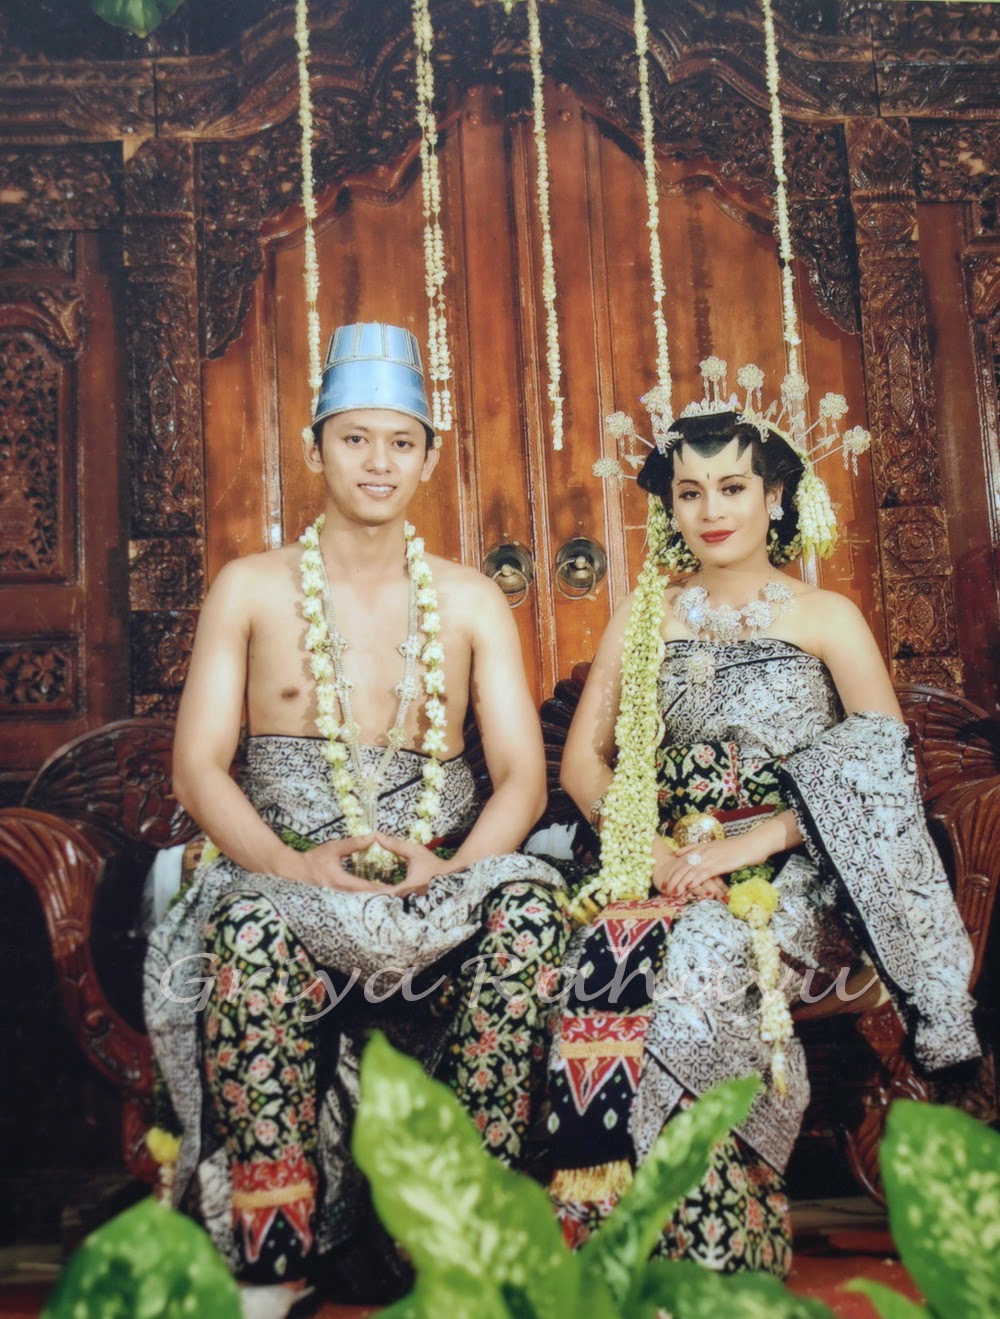 Upacara Pengantin Jawa Modern upacara pengantin jawa 